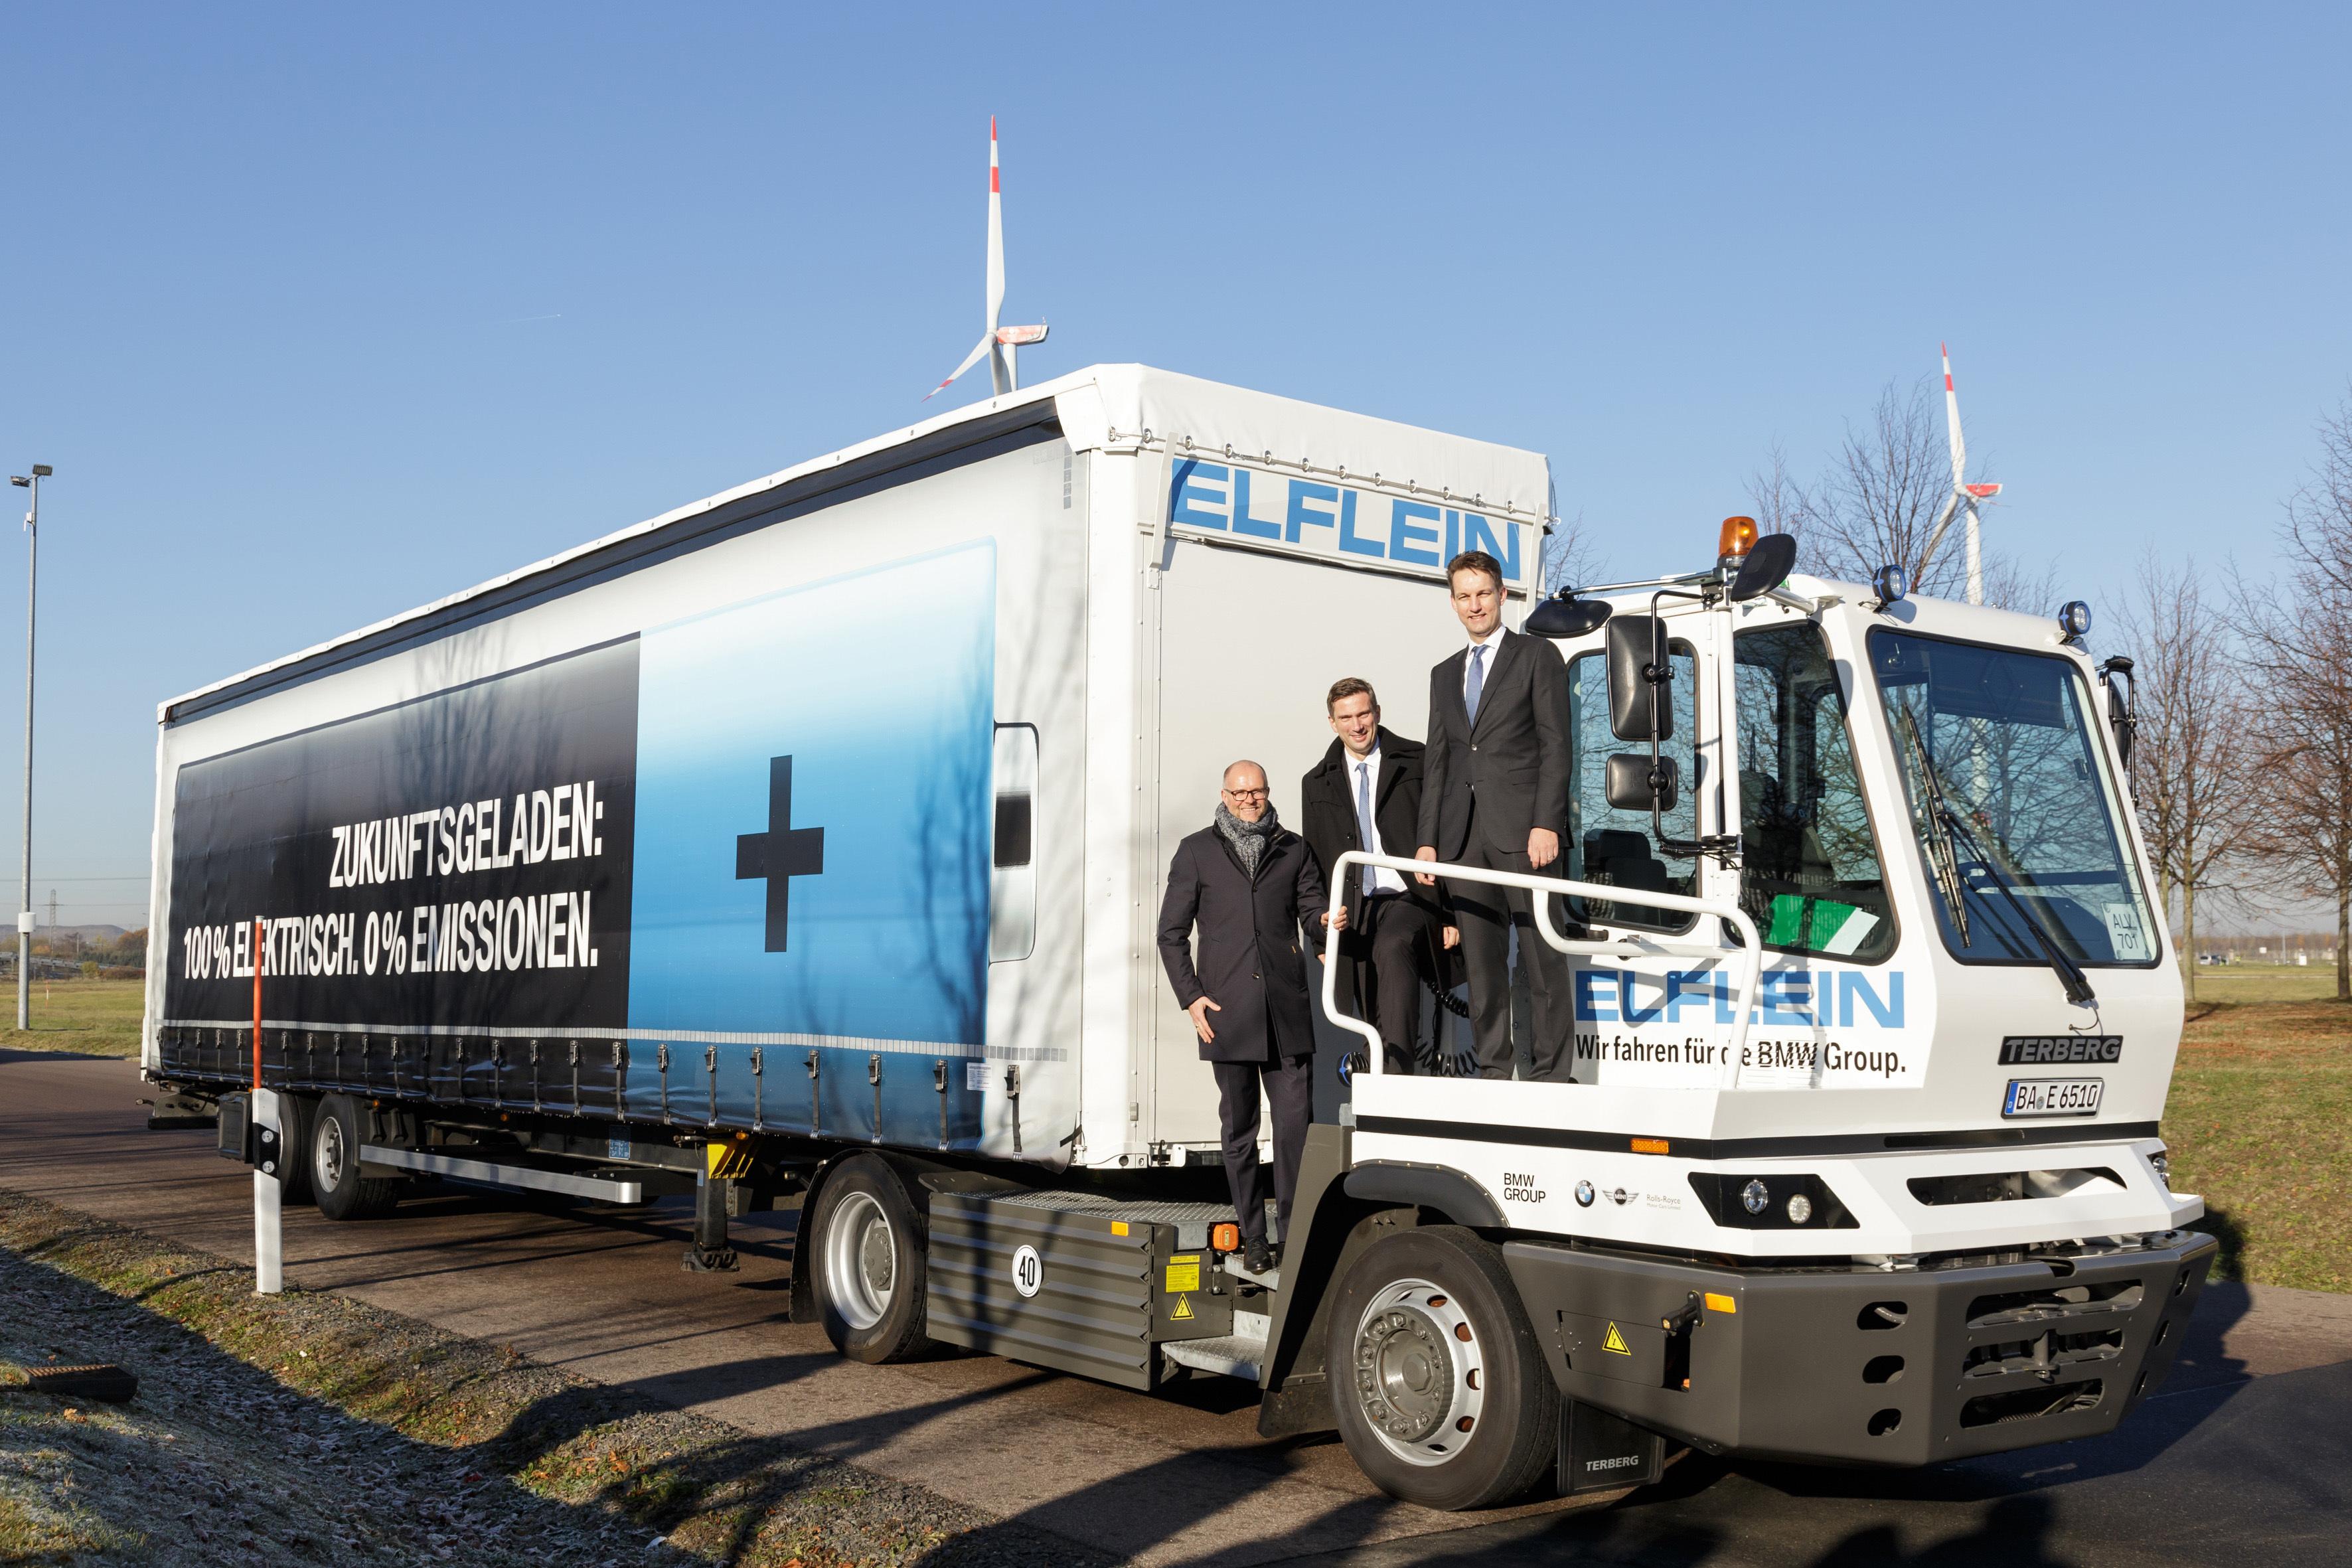 兼容锂电池和氢燃料电池！荷兰公司Terberg推出新一代电动拖车